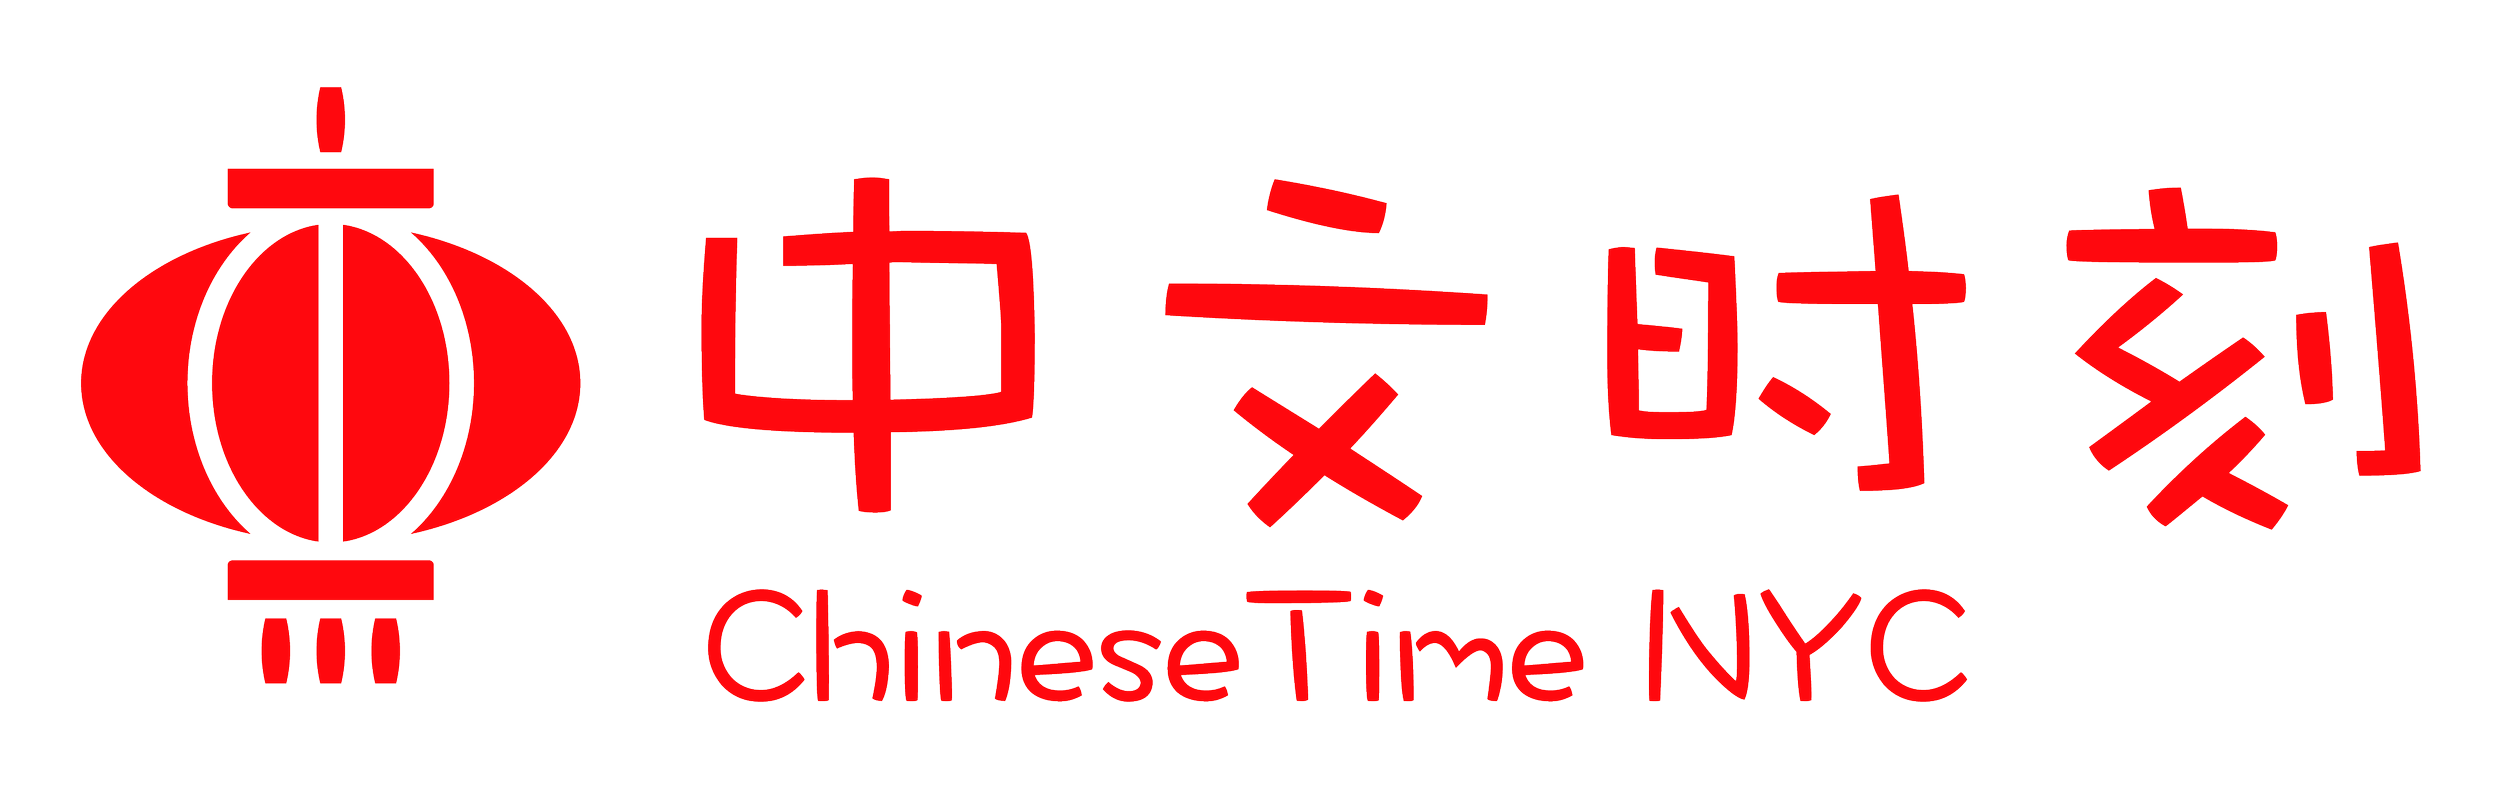 ChineseTime NYC 中文时刻 